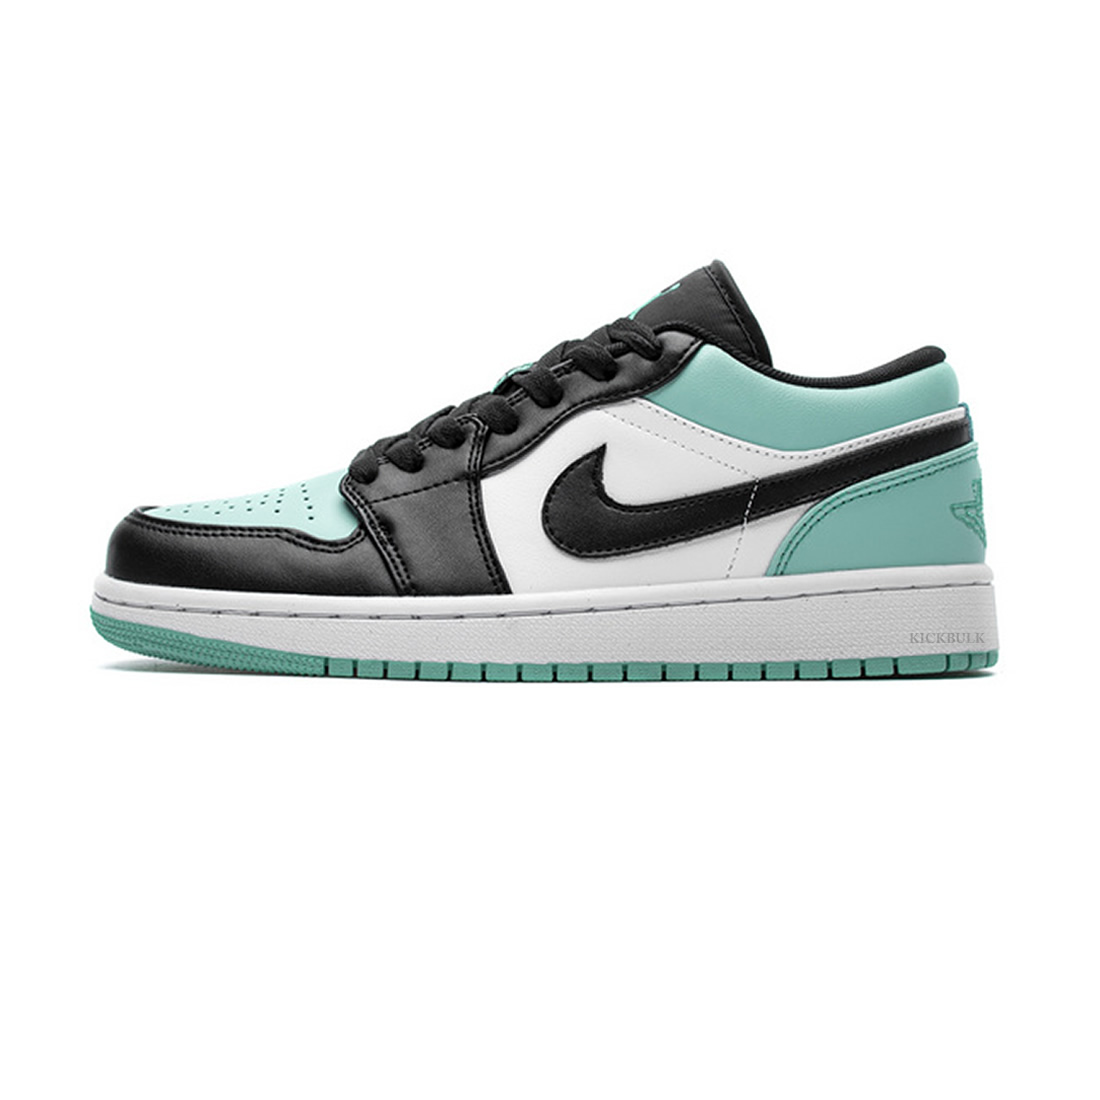 Nike Air Jordan 1 Low Emerald Toe 553558 117 1 - kickbulk.cc